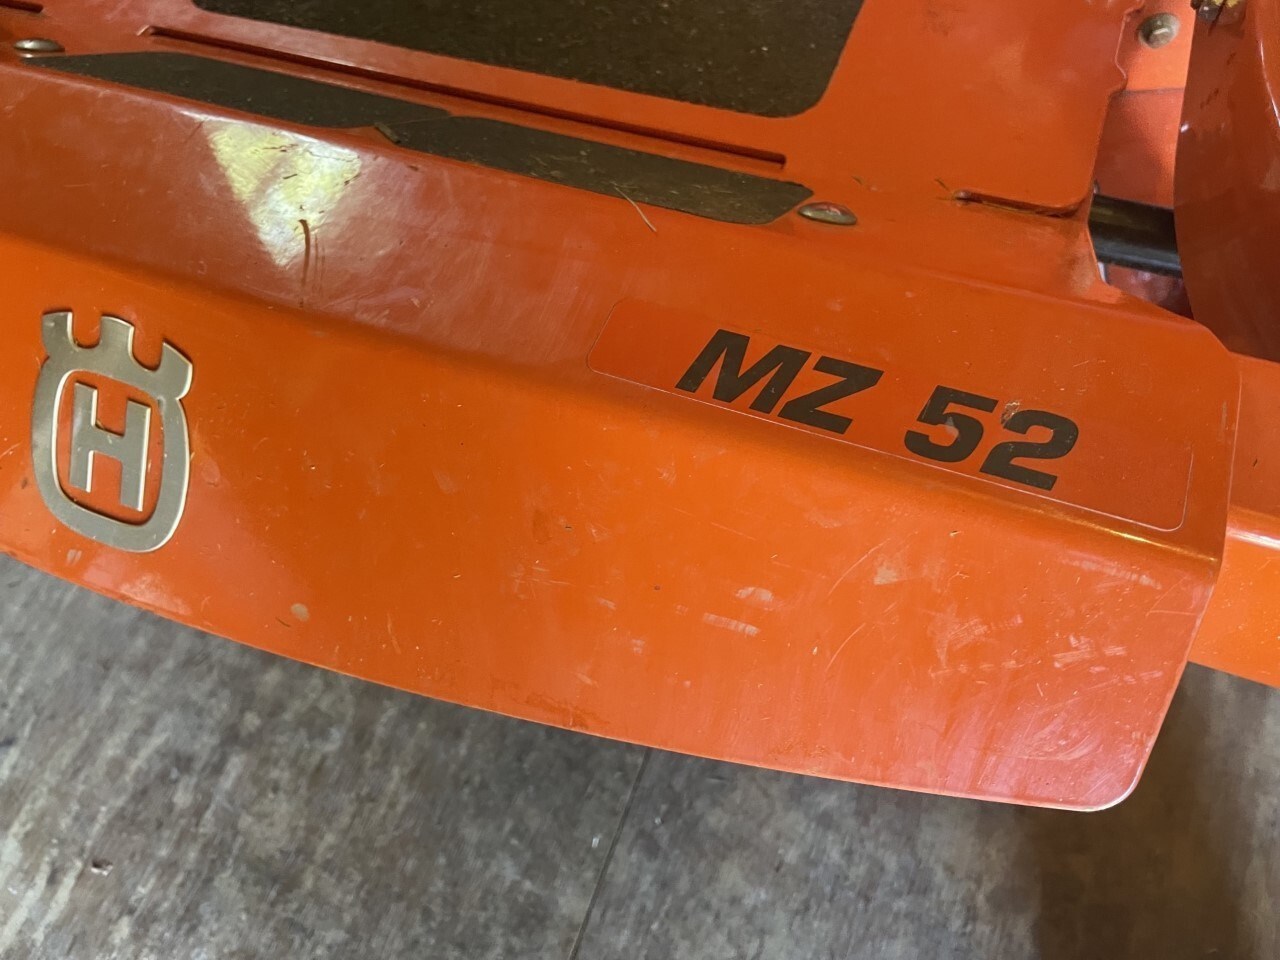 2016 Husqvarna M-ZT 52 Zero Turn Mower For Sale